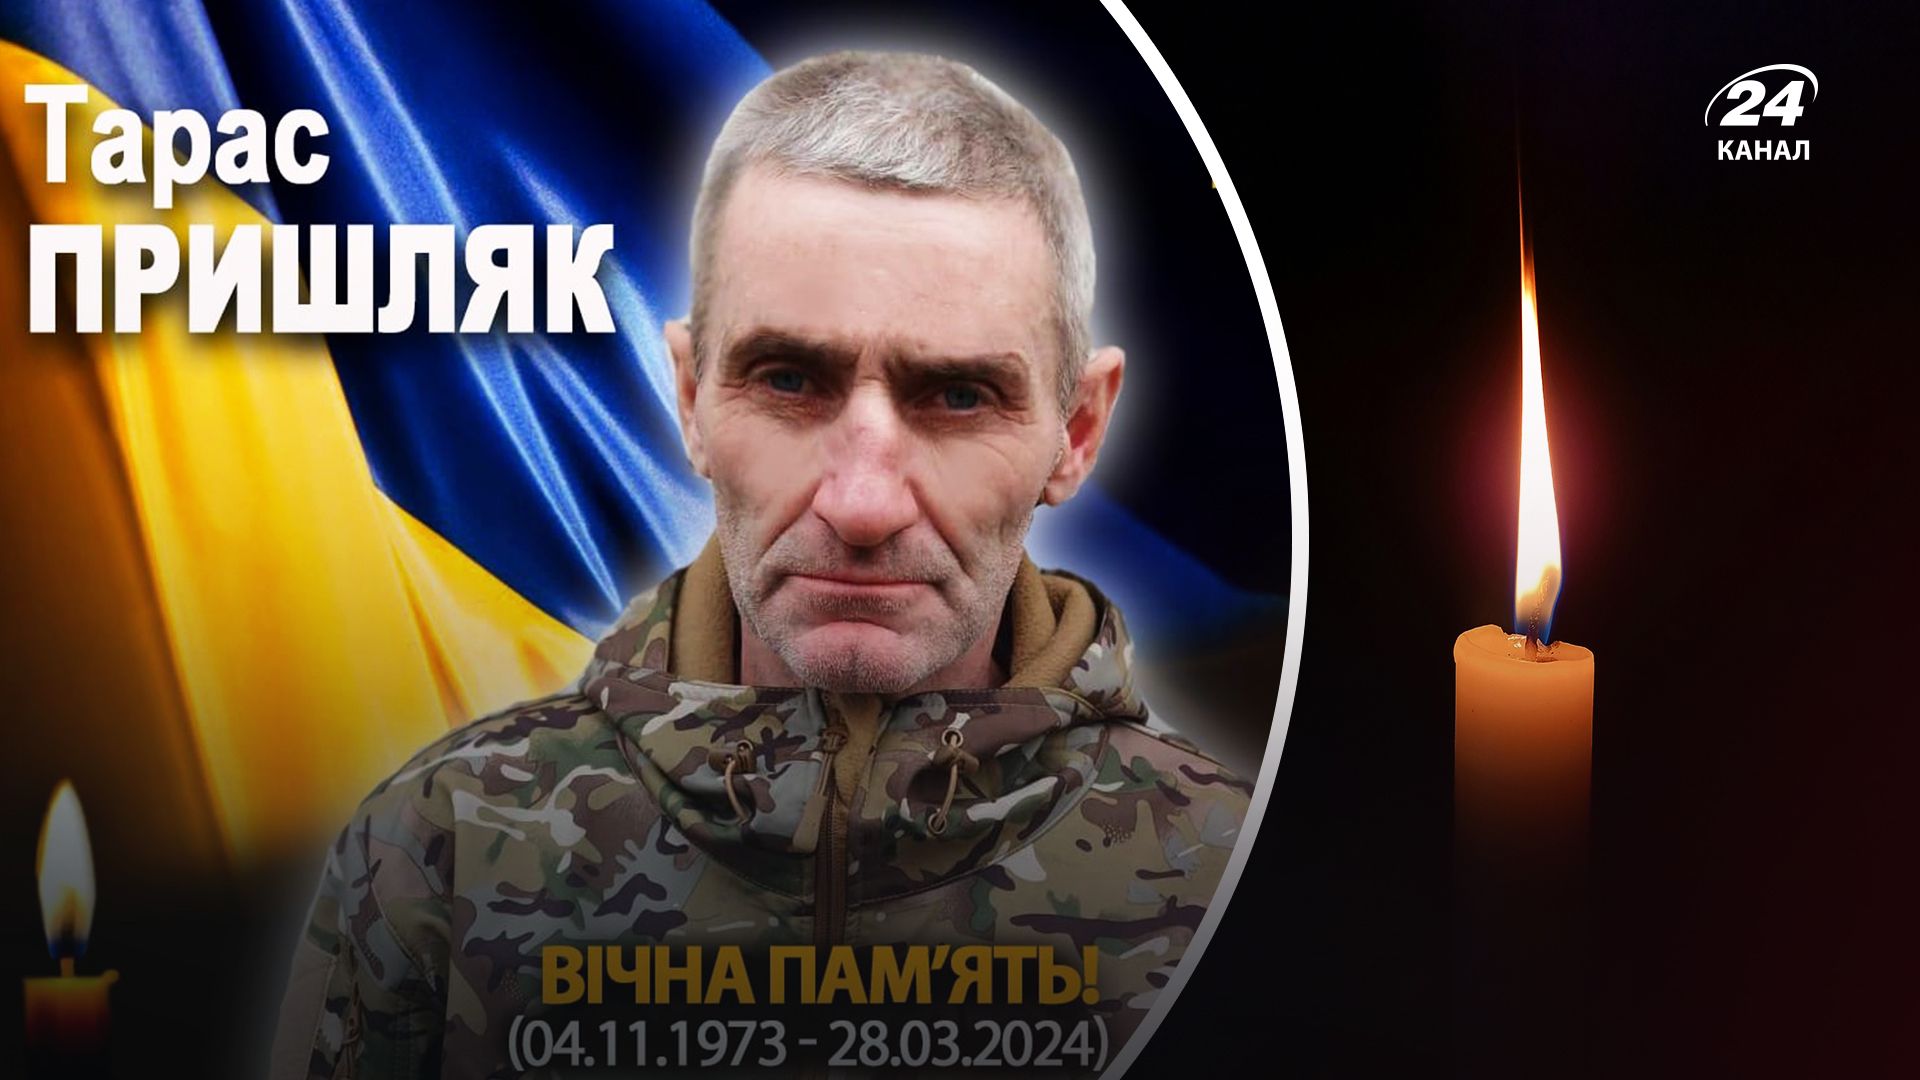 Защищая Украину погиб Тарас Пришляк - 24 Канал